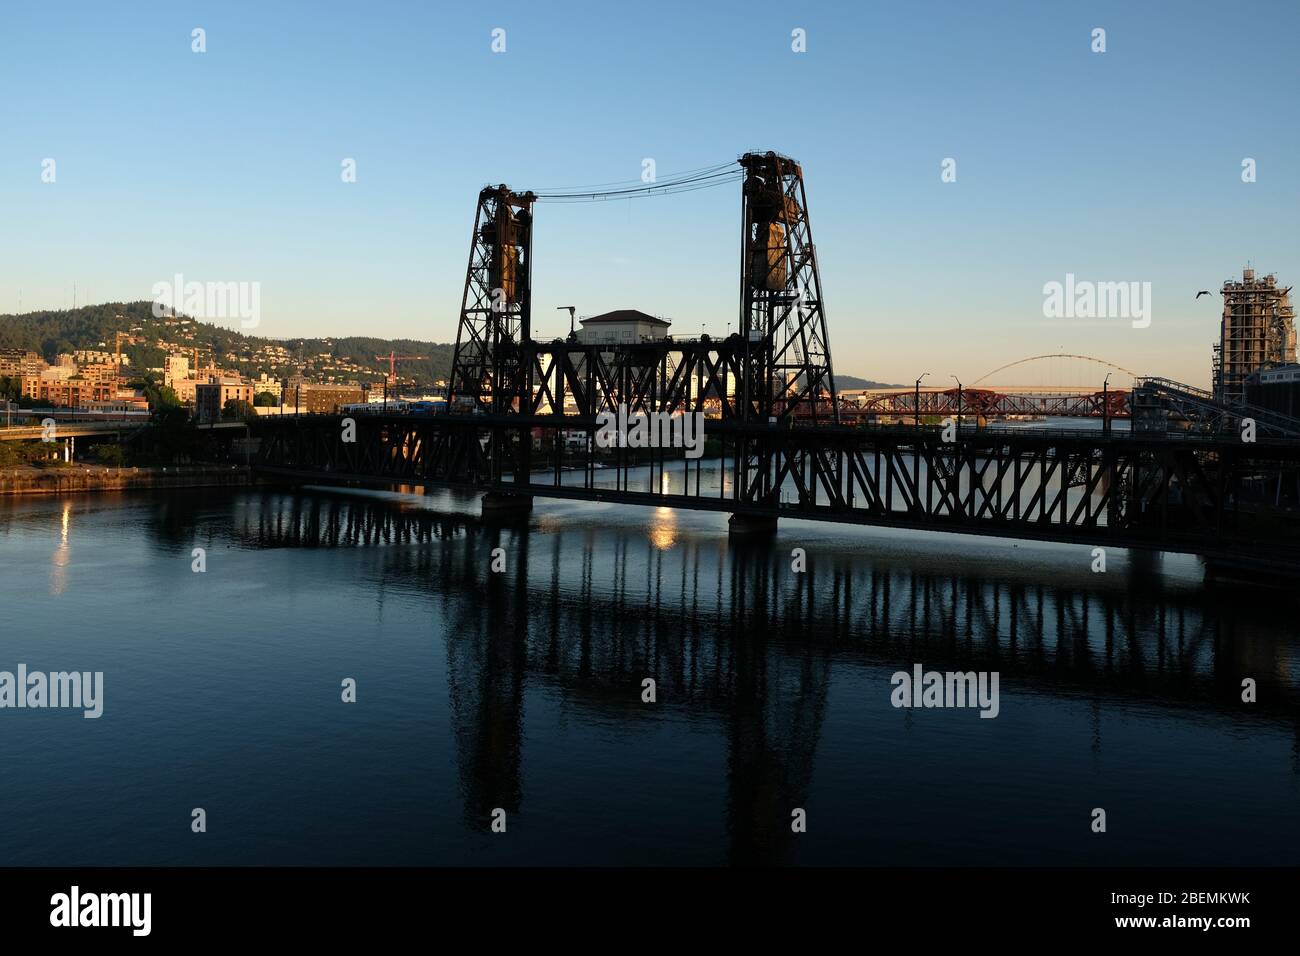 Vue sur le rail télescopique historique unique et le pont en acier de l'ascenseur routier au-dessus de la rivière Willamette, dans le centre-ville de Portland, Oregon Banque D'Images